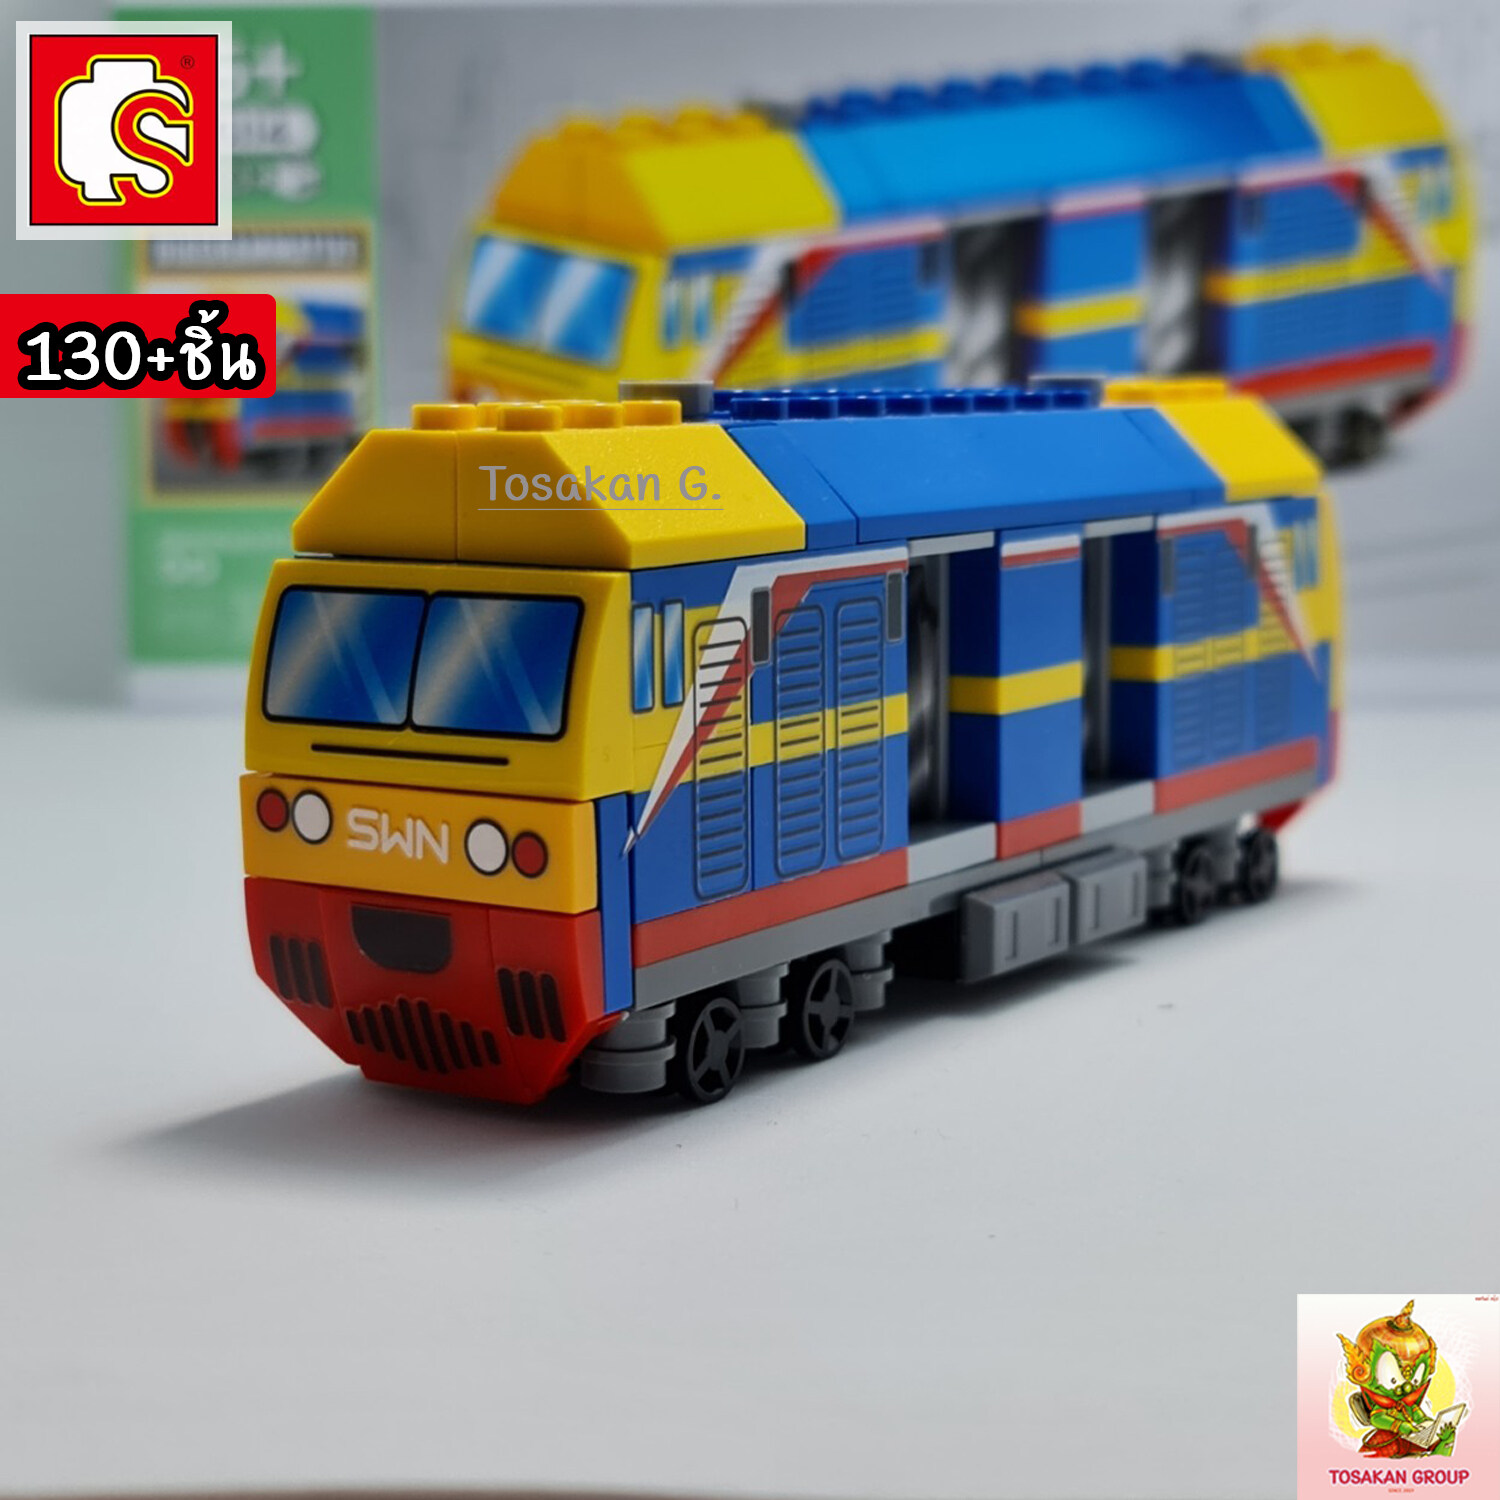 ตัวต่อเลโก้ Sembo Block ยานพาหนะ ไทยสไตล์ ของเล่น ของสะสม ตั้งโชว์ เสริมทักษะ สมาธิ กิจกรรมยามว่างในครอบครัว (สินค้าพร้อมส่ง) สี รถไฟไทย สี รถไฟไทย